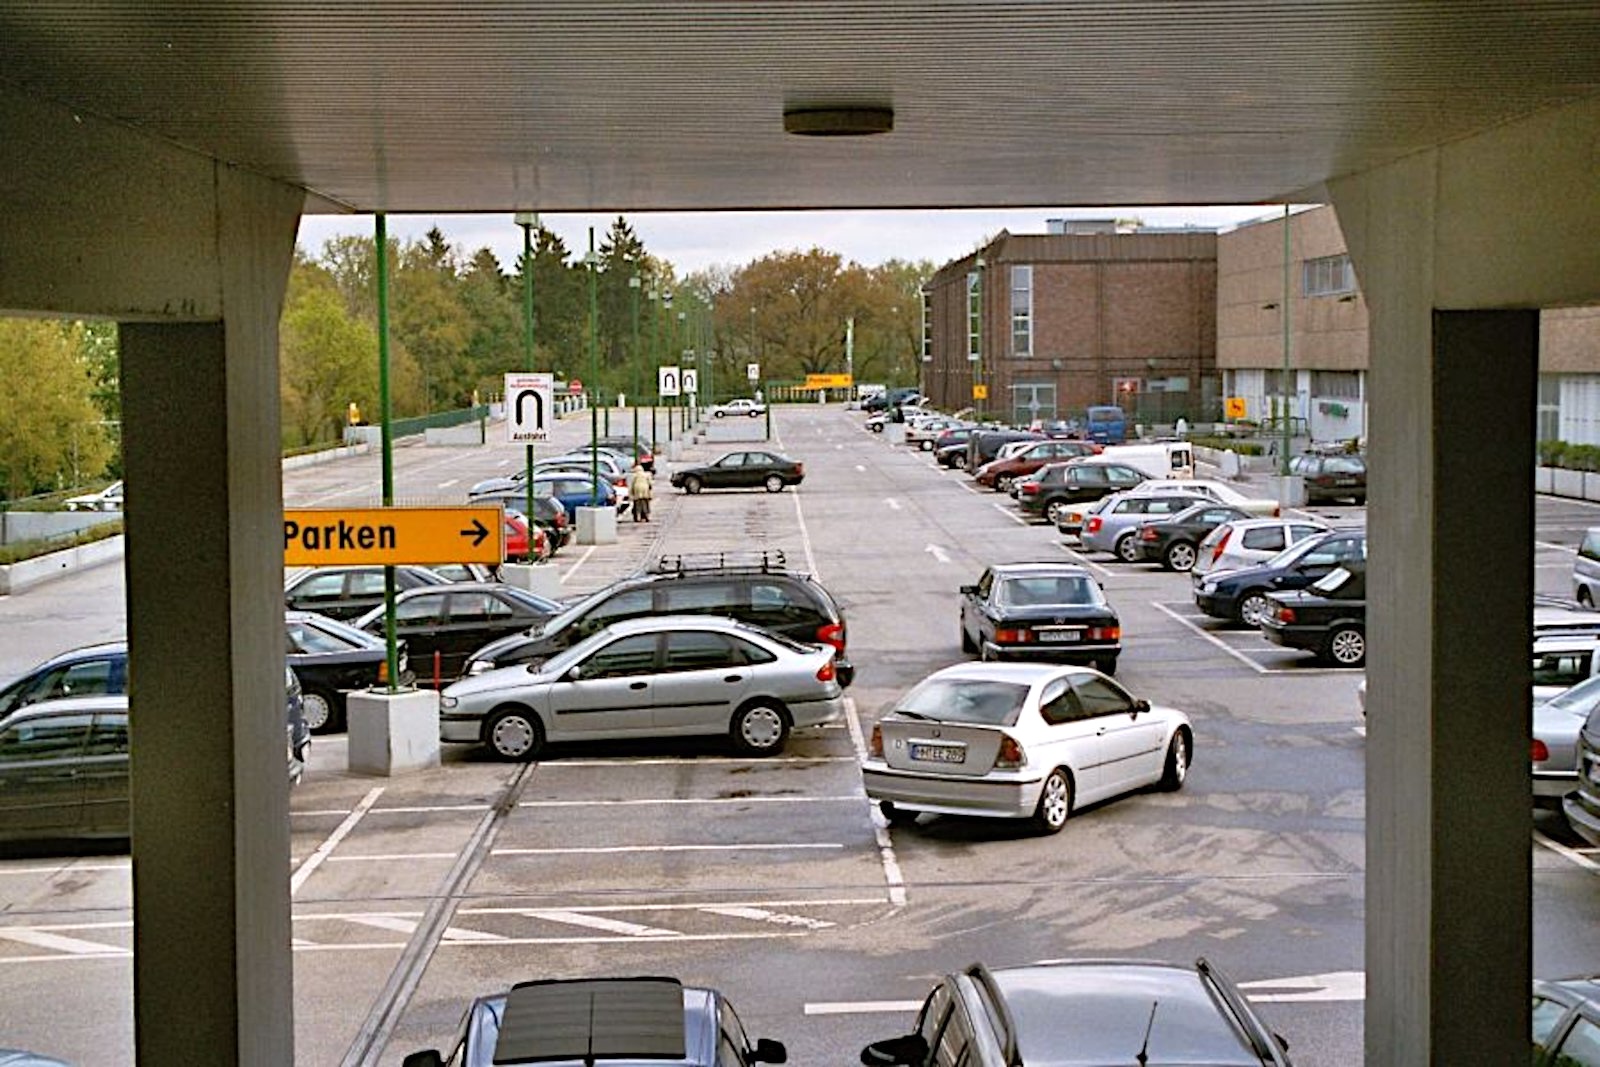 Parkflächen des Alstertal-Einkaufszentrum in Hamburg Poppenbüttel ca. 1990. (Bild: Gepko Cipa)